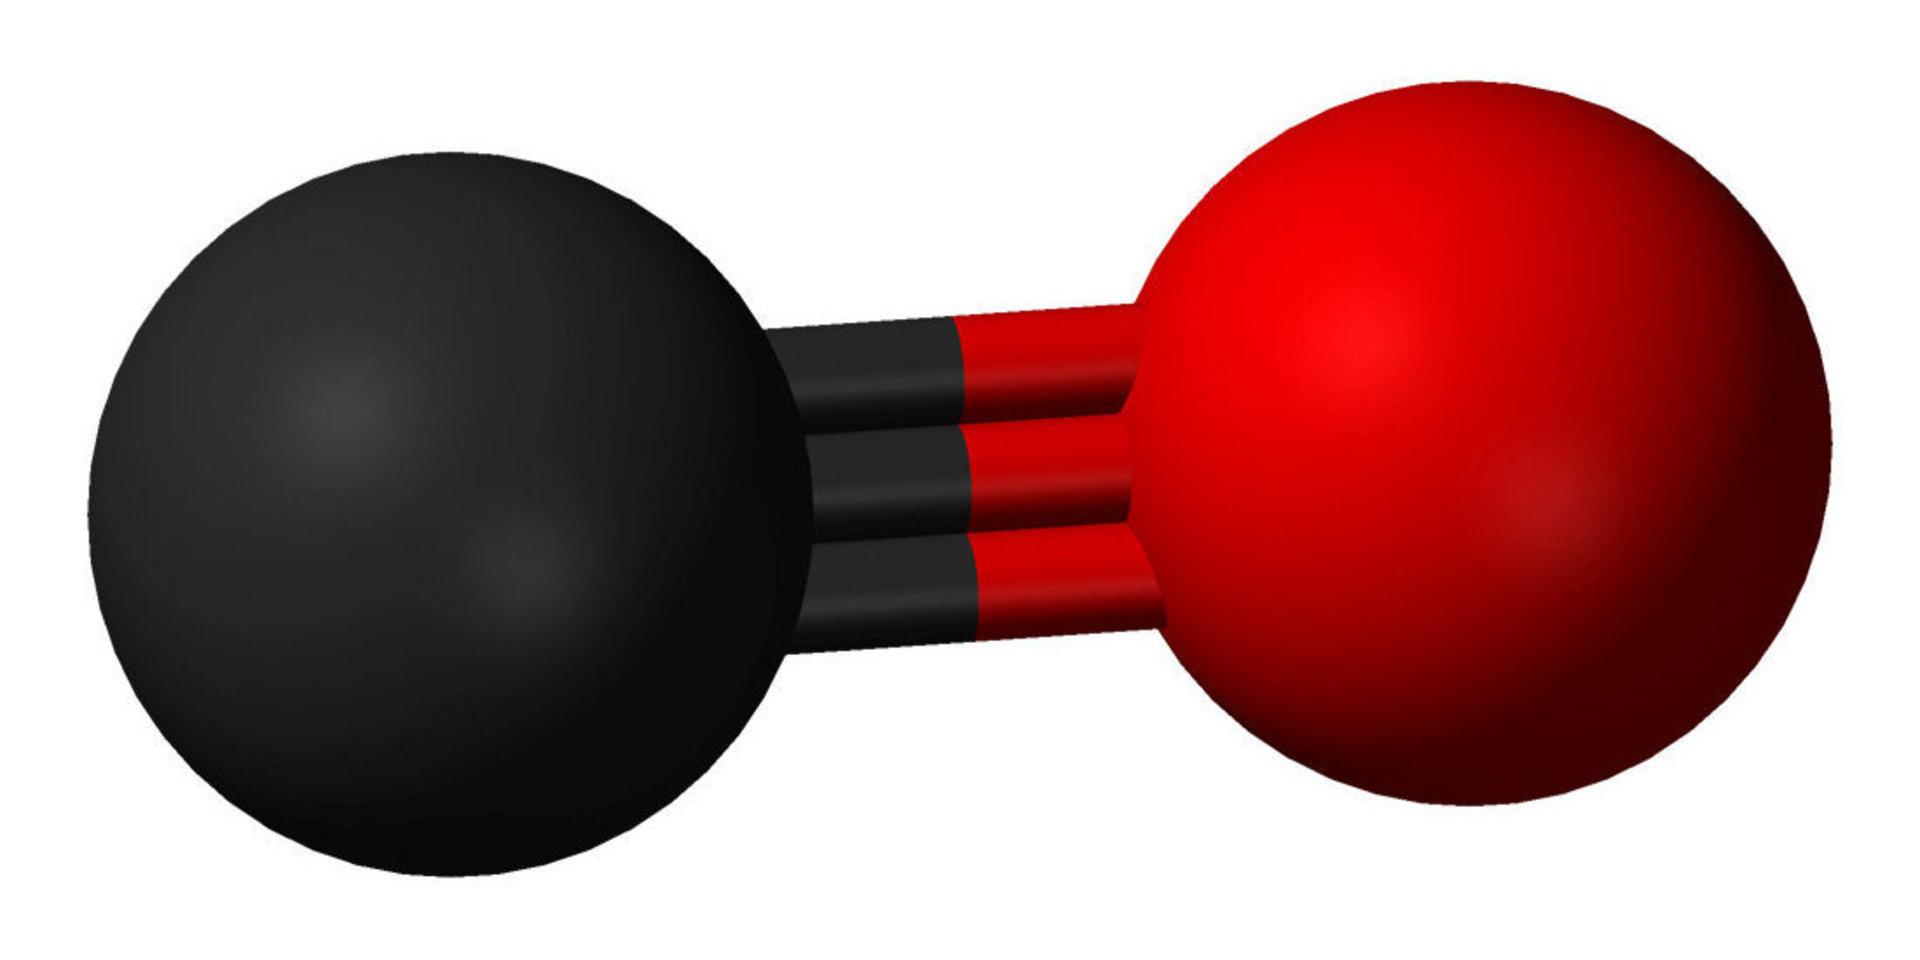 Kolmonooxid består av en kolatom (svart) och en syreatom (röd). 